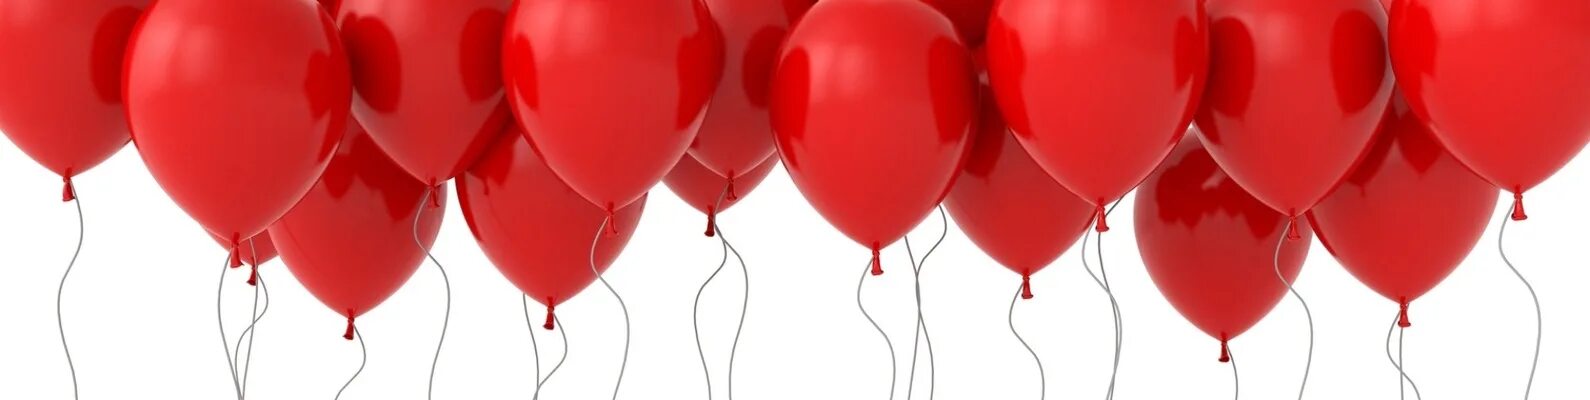 Видео красных шаров. Красные шары. Красный воздушный шарик. Воздушные шарики на прозрачном фоне. Цветные шары красные.